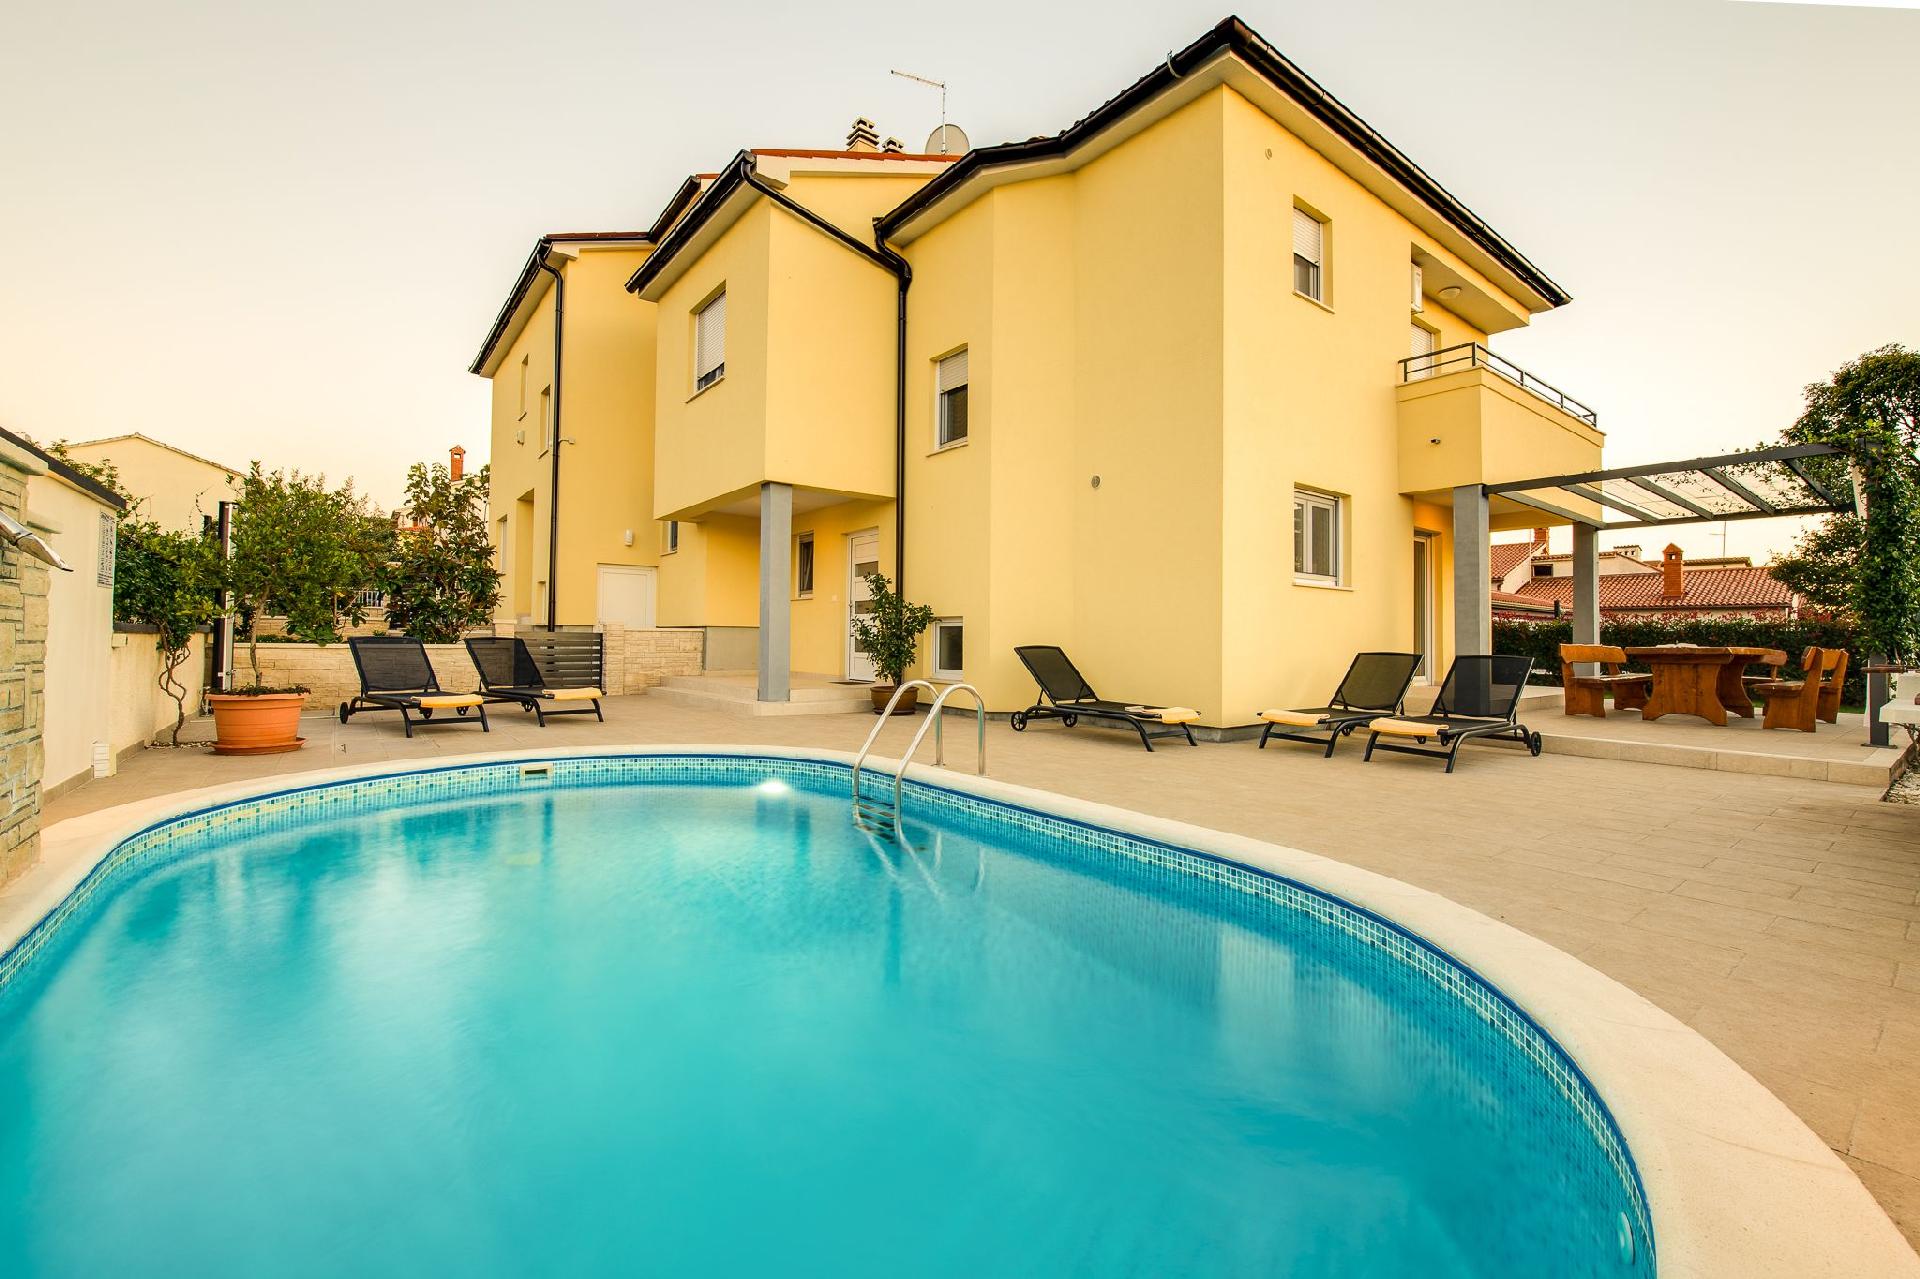 Ferienhaus mit Privatpool für 8 Personen ca.  Ferienhaus in Kroatien